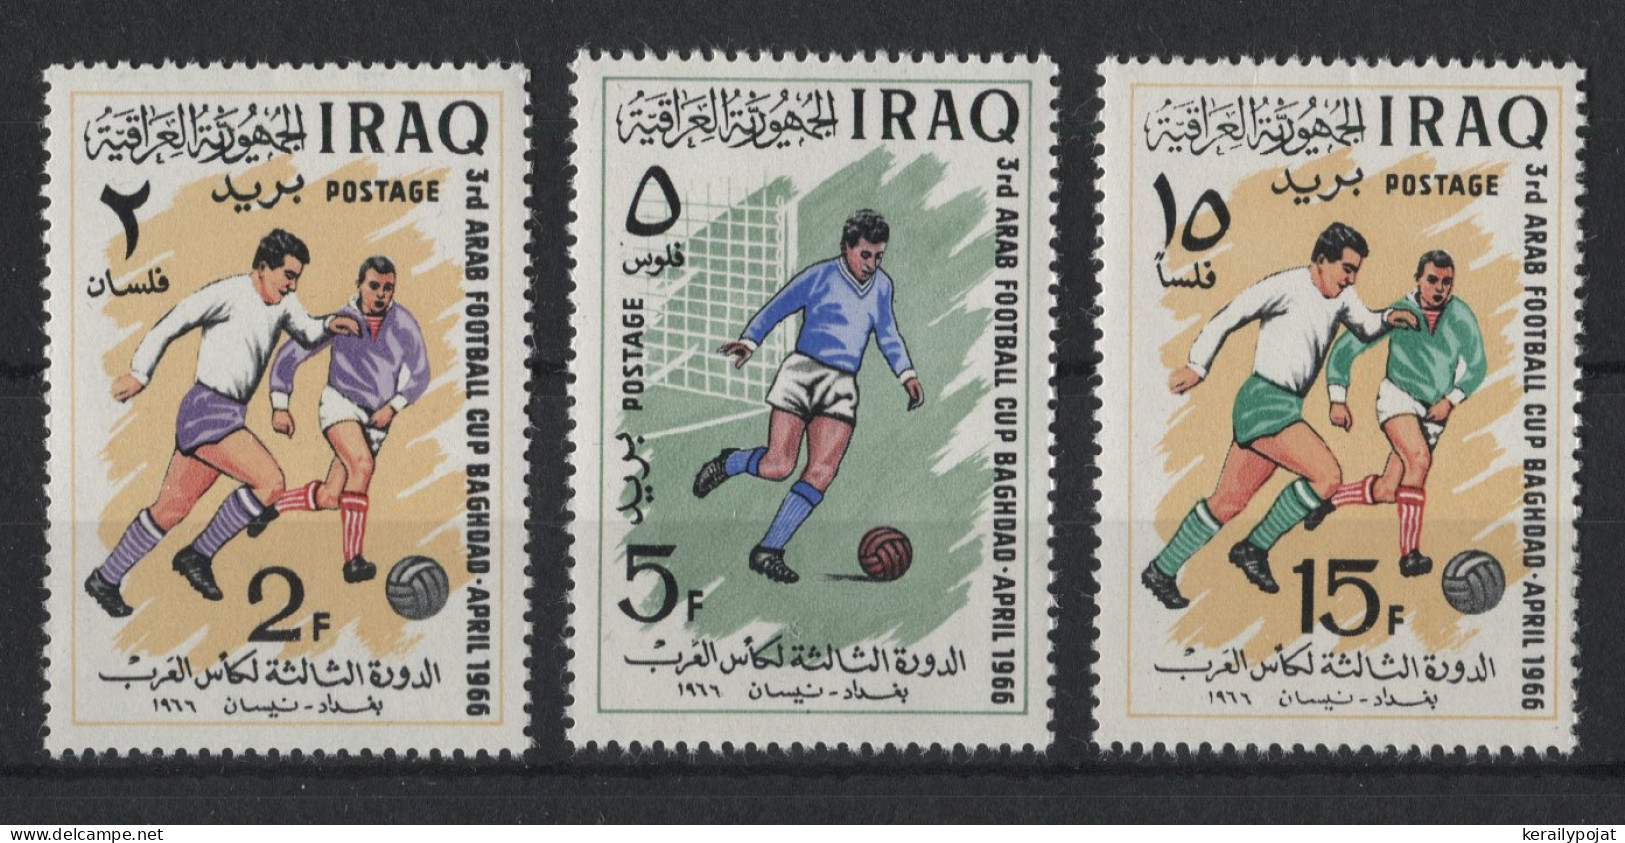 Iraq - 1966 Arab Football Cup MNH__(TH-23686) - Irak